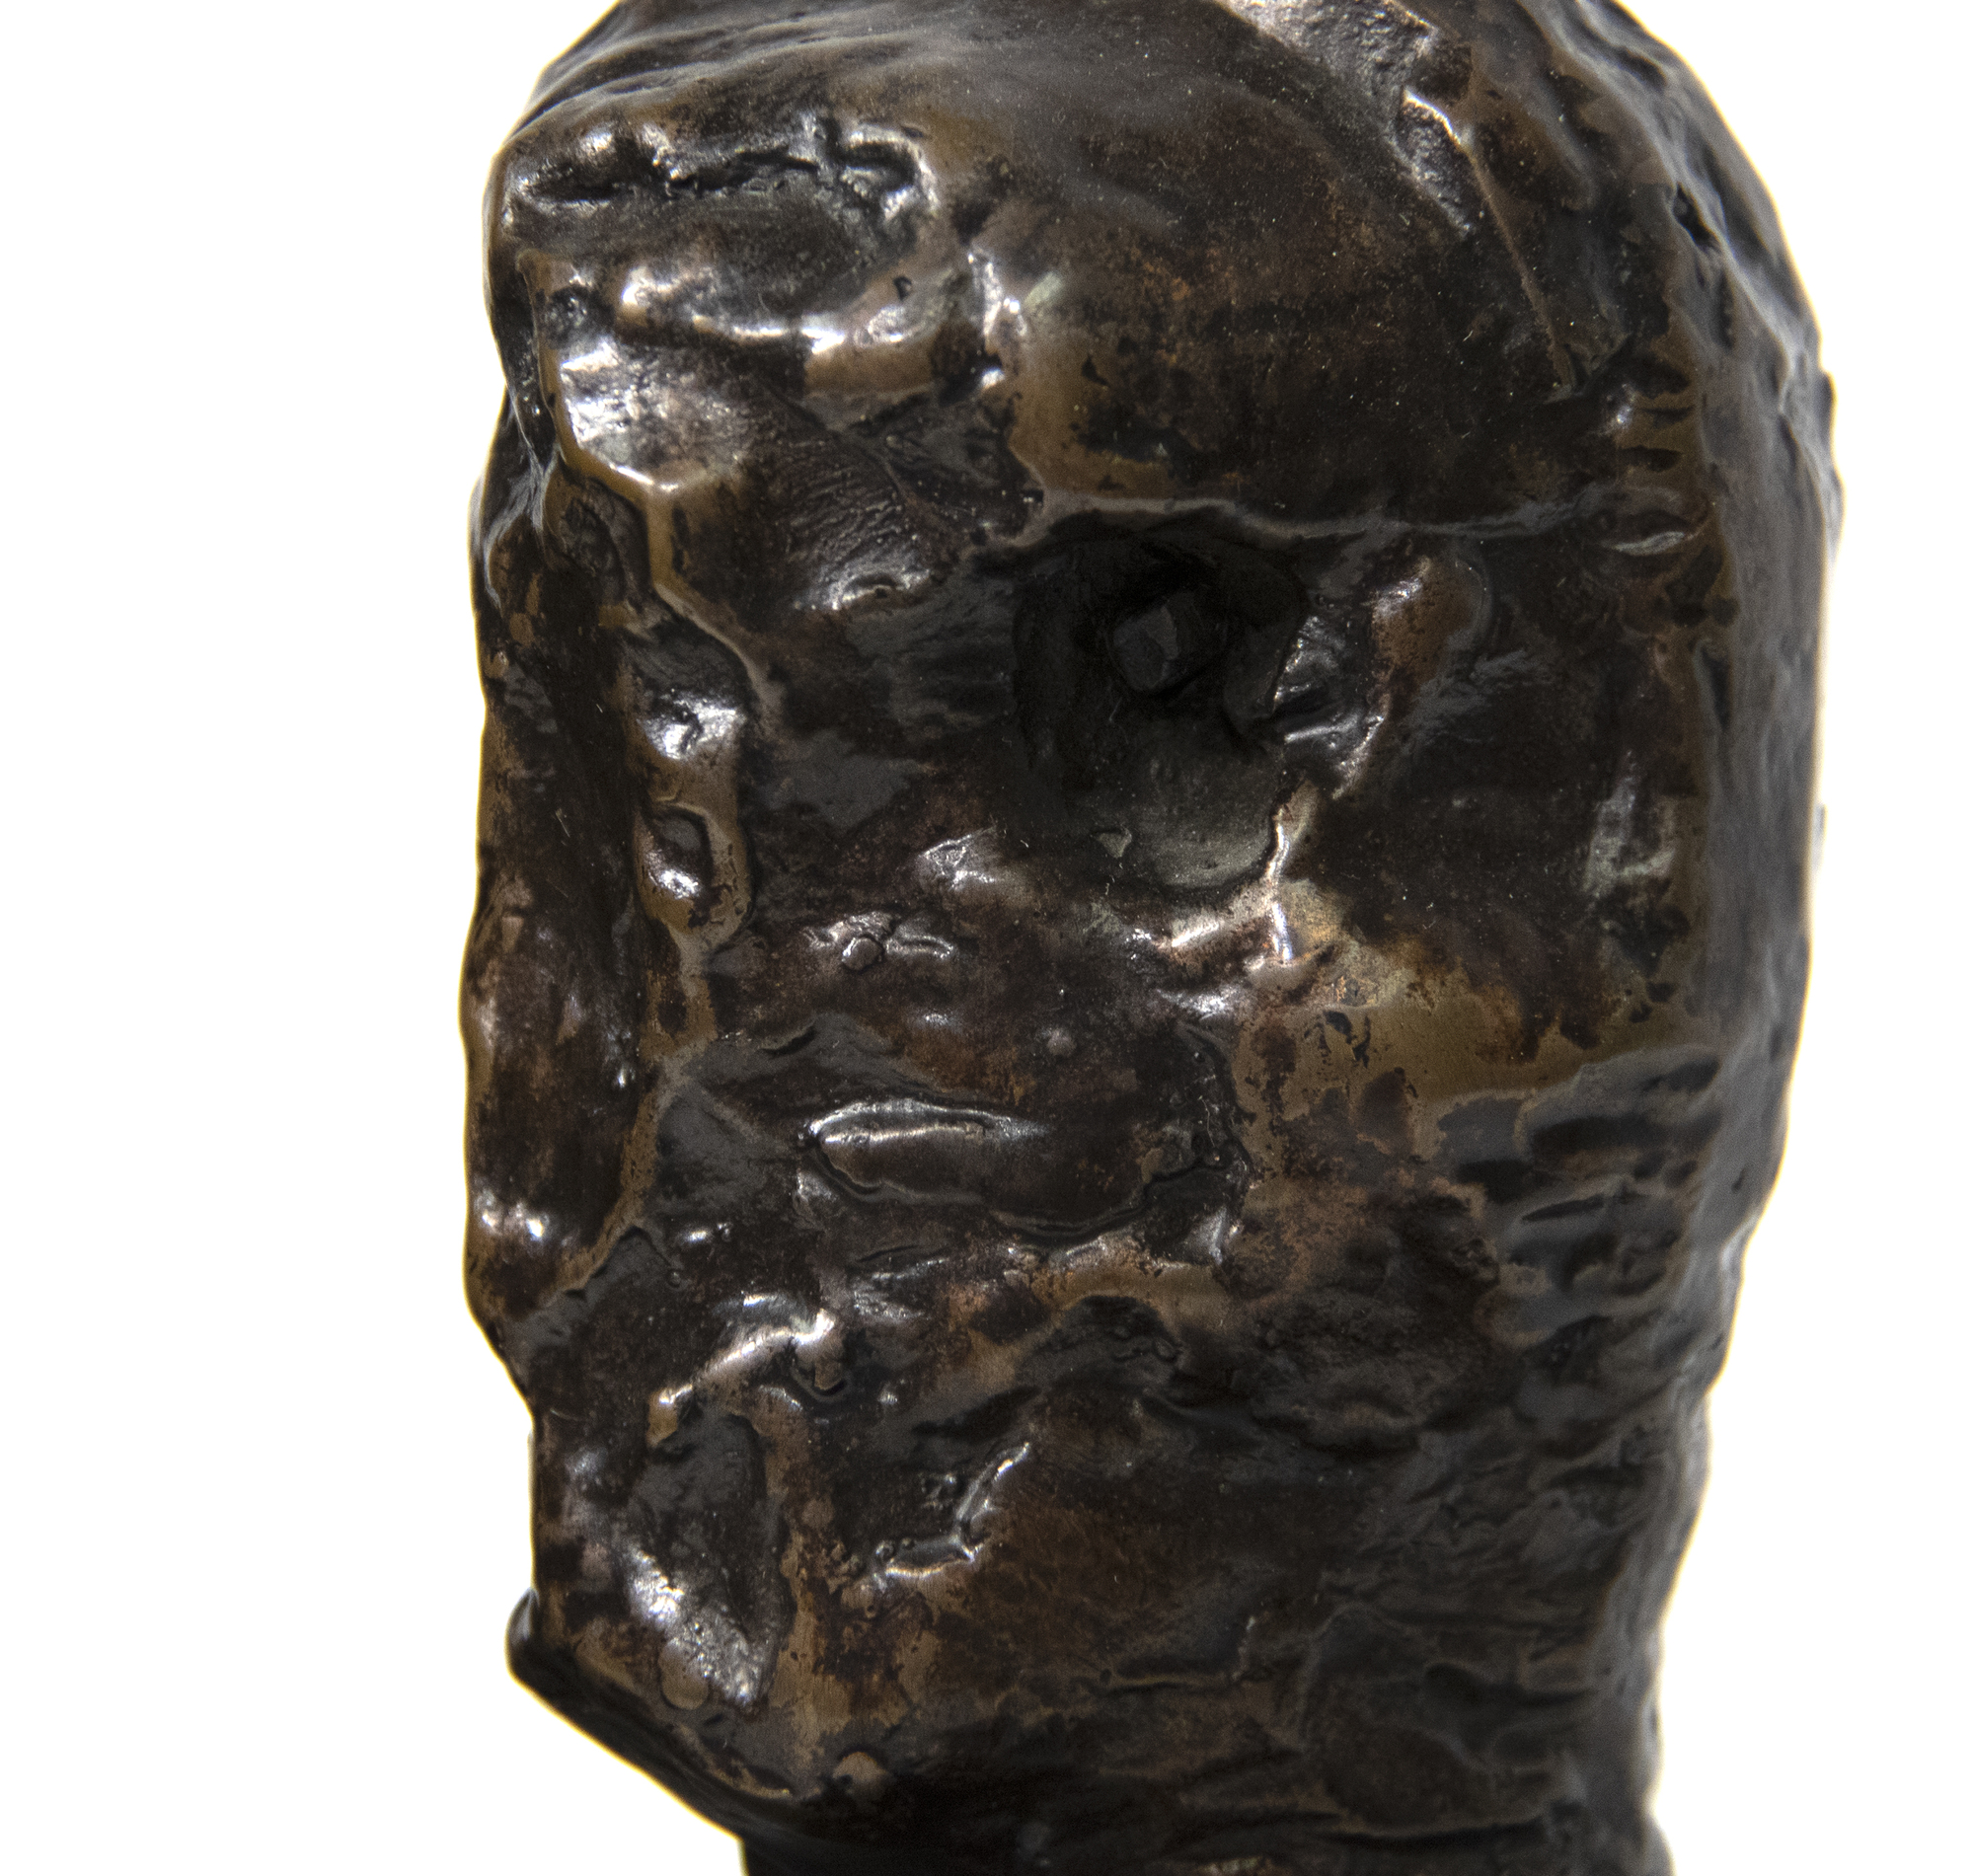 هنري مور -- رؤساء الامبراطور -- البرونزية مع البزينة البني -- 6 3 /4 × 8 1 / 4 × 4 1 / 2 في.